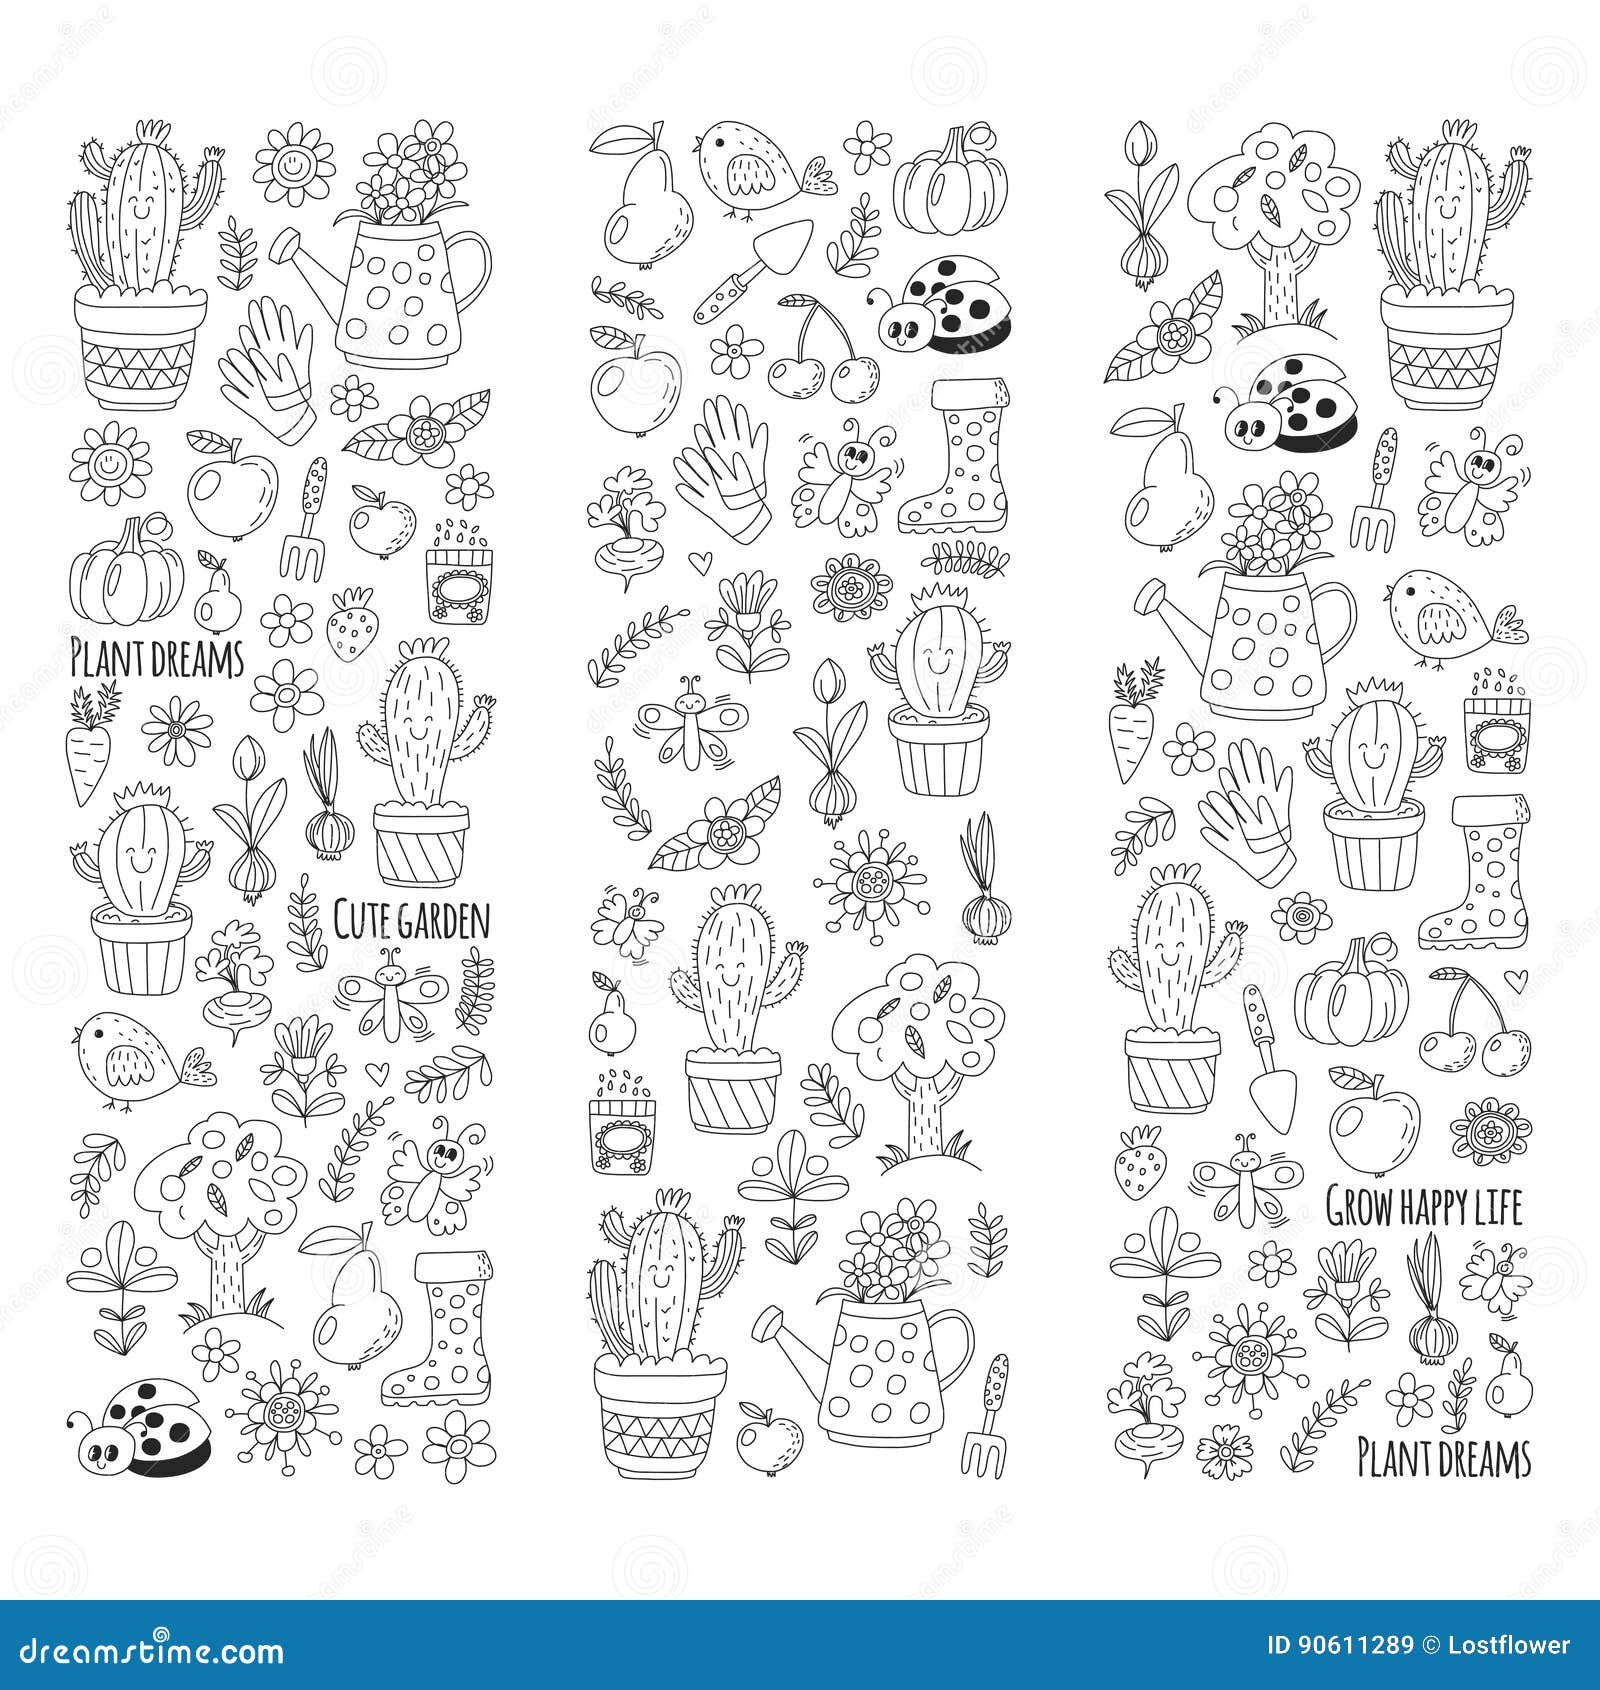 https://thumbs.dreamstime.com/z/cute-vector-garden-birds-cactus-plants-fruits-berries-gardening-tools-rubberboots-garden-market-pattern-doodle-style-90611289.jpg